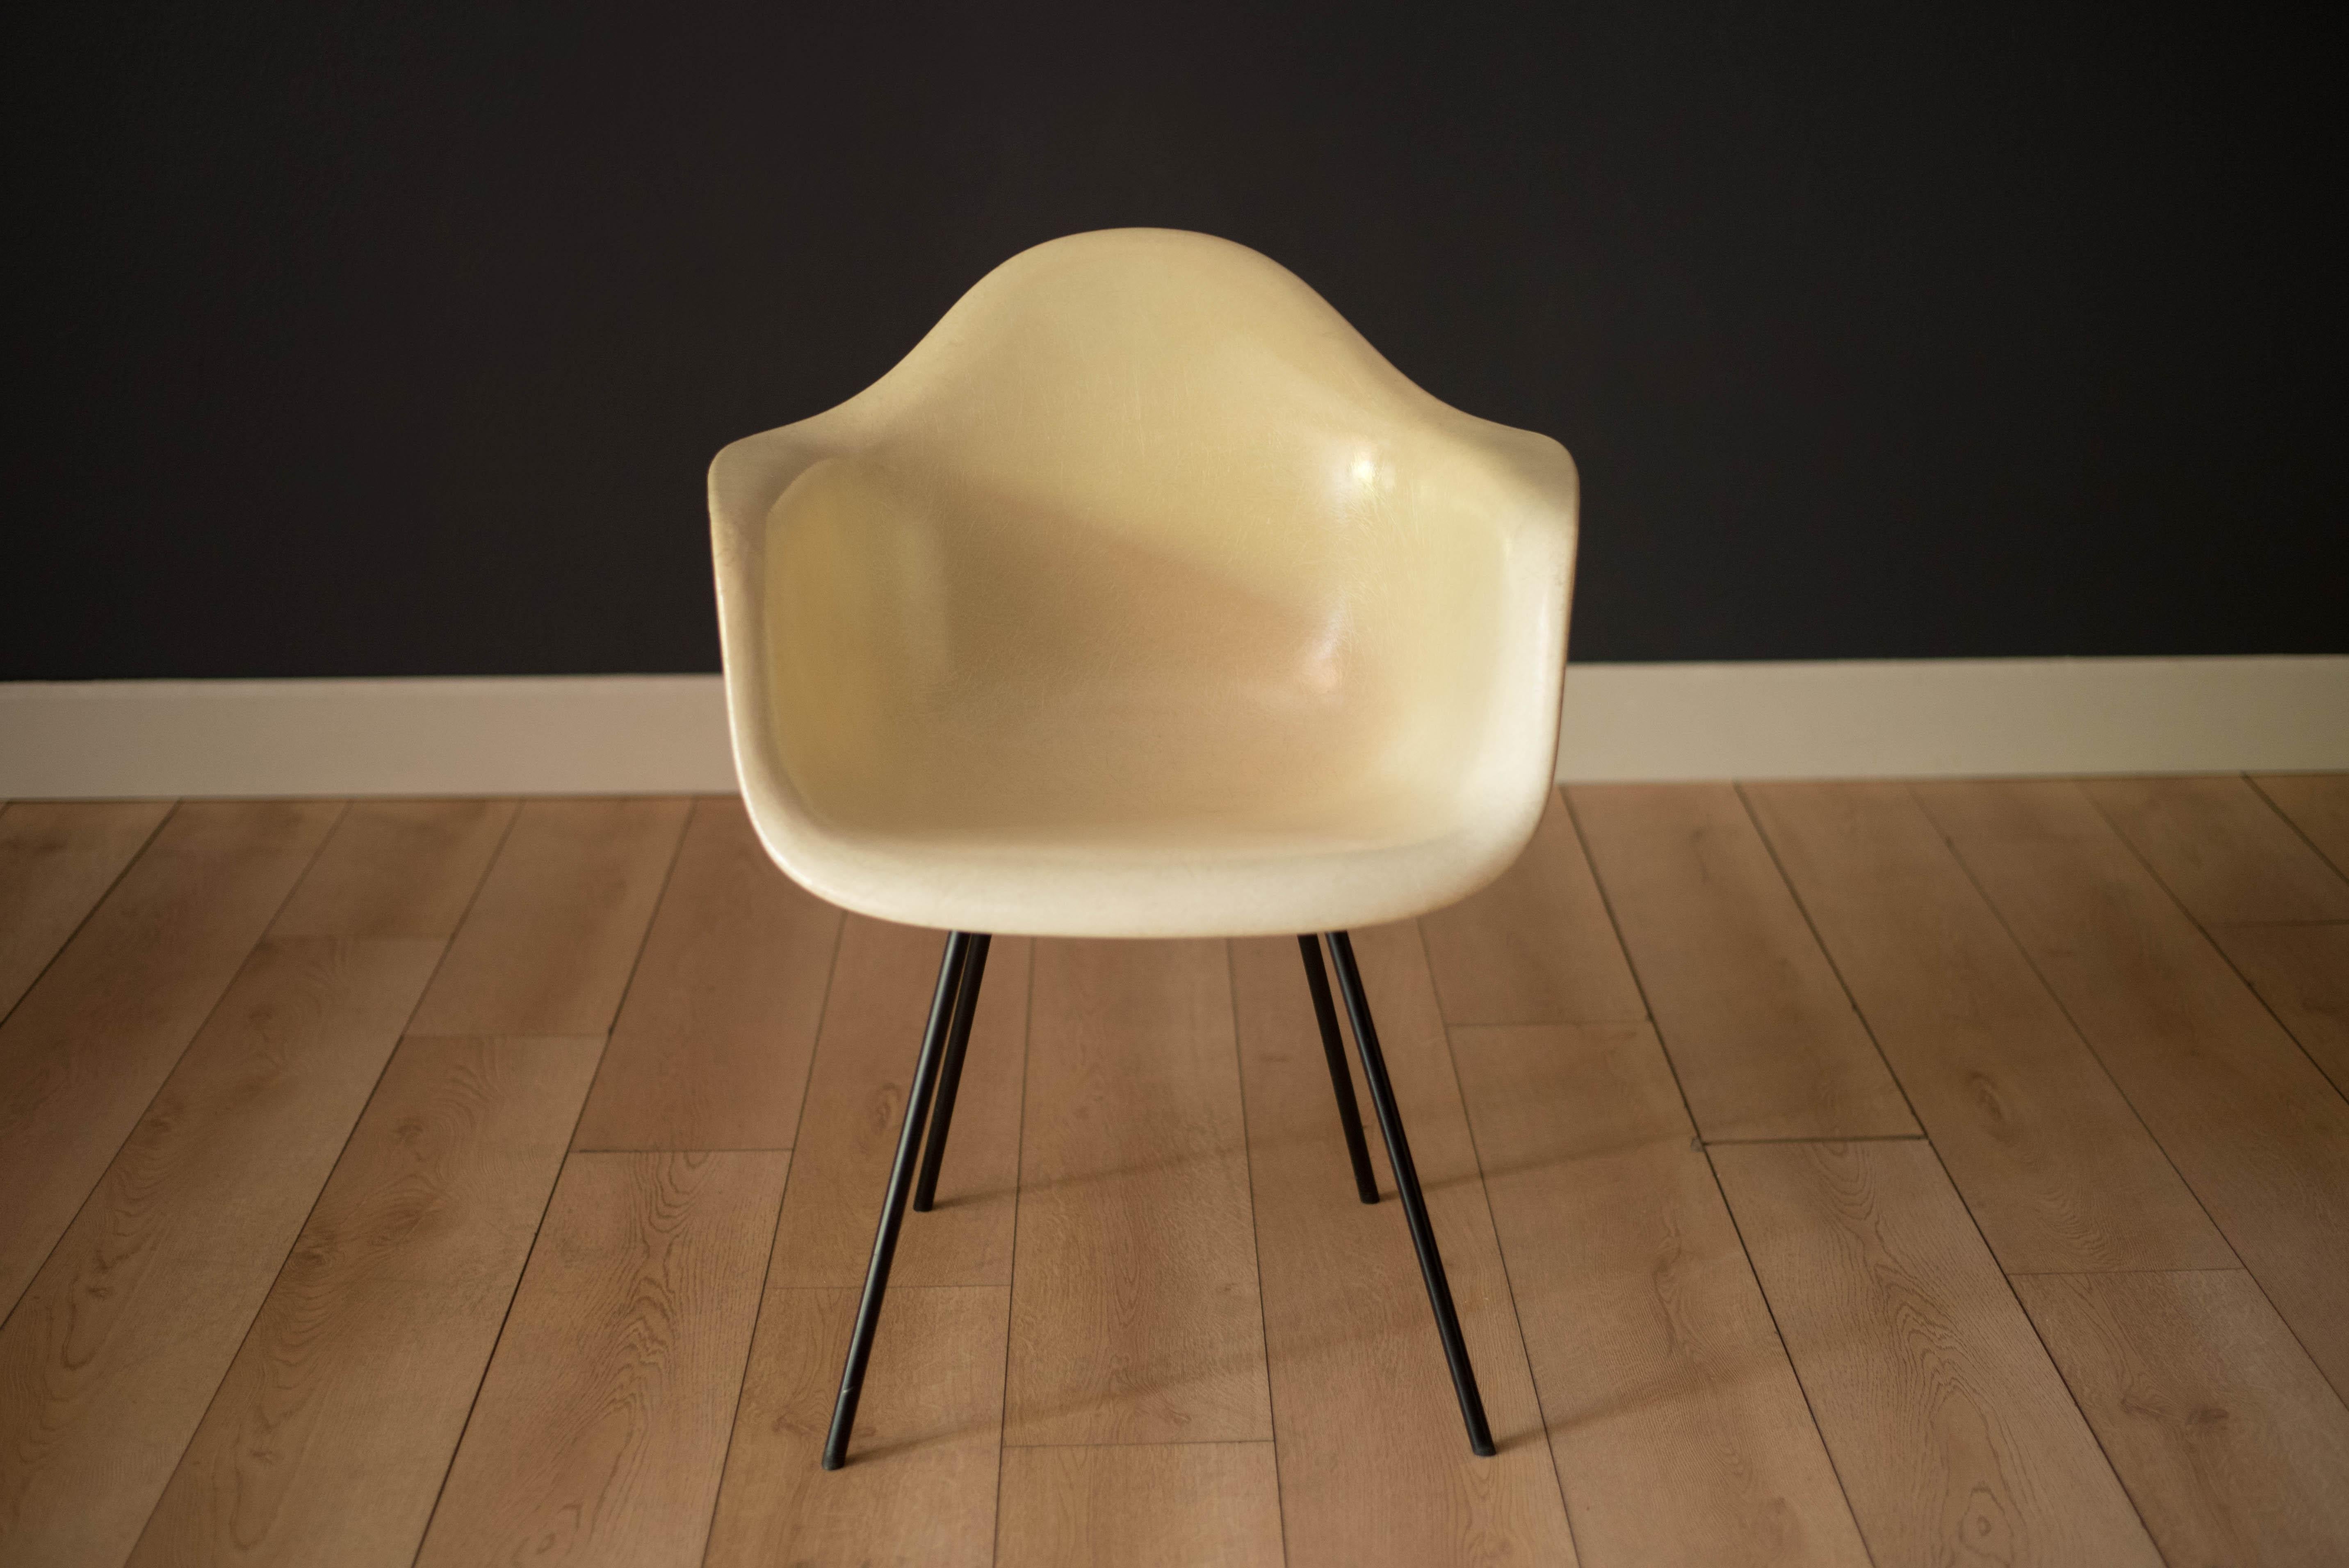 Ikonisches Design (DAX), Esstischsessel mit X-Fuß von Ray und Charles Eames, um die frühen 1950er Jahre. Dieser pergamentfarbene Sessel der zweiten Generation hat eine Hochglanzoberfläche, die von dem originalen schwarzen X-Stahlgestell mit großen